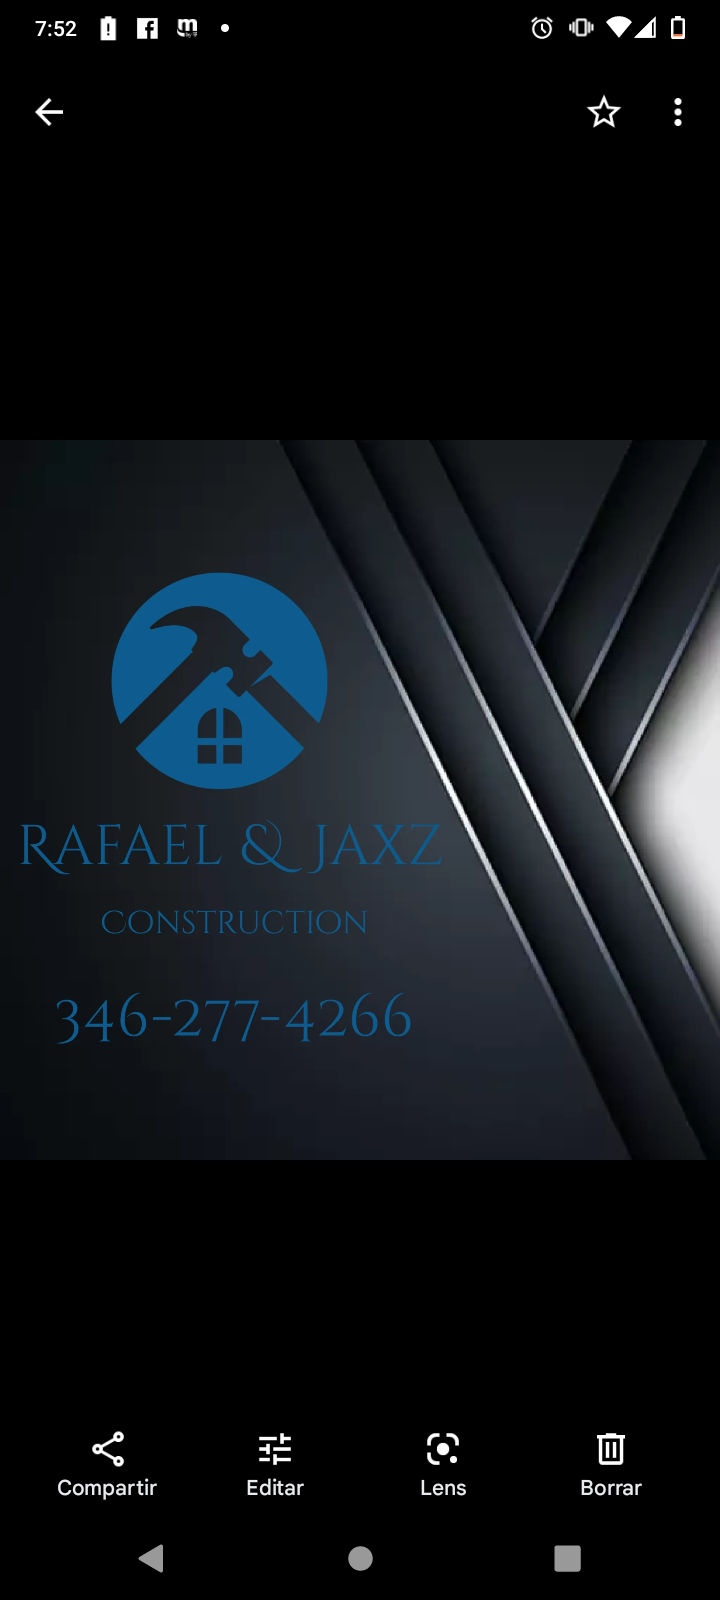 Rafael & Jaxz Construction Logo